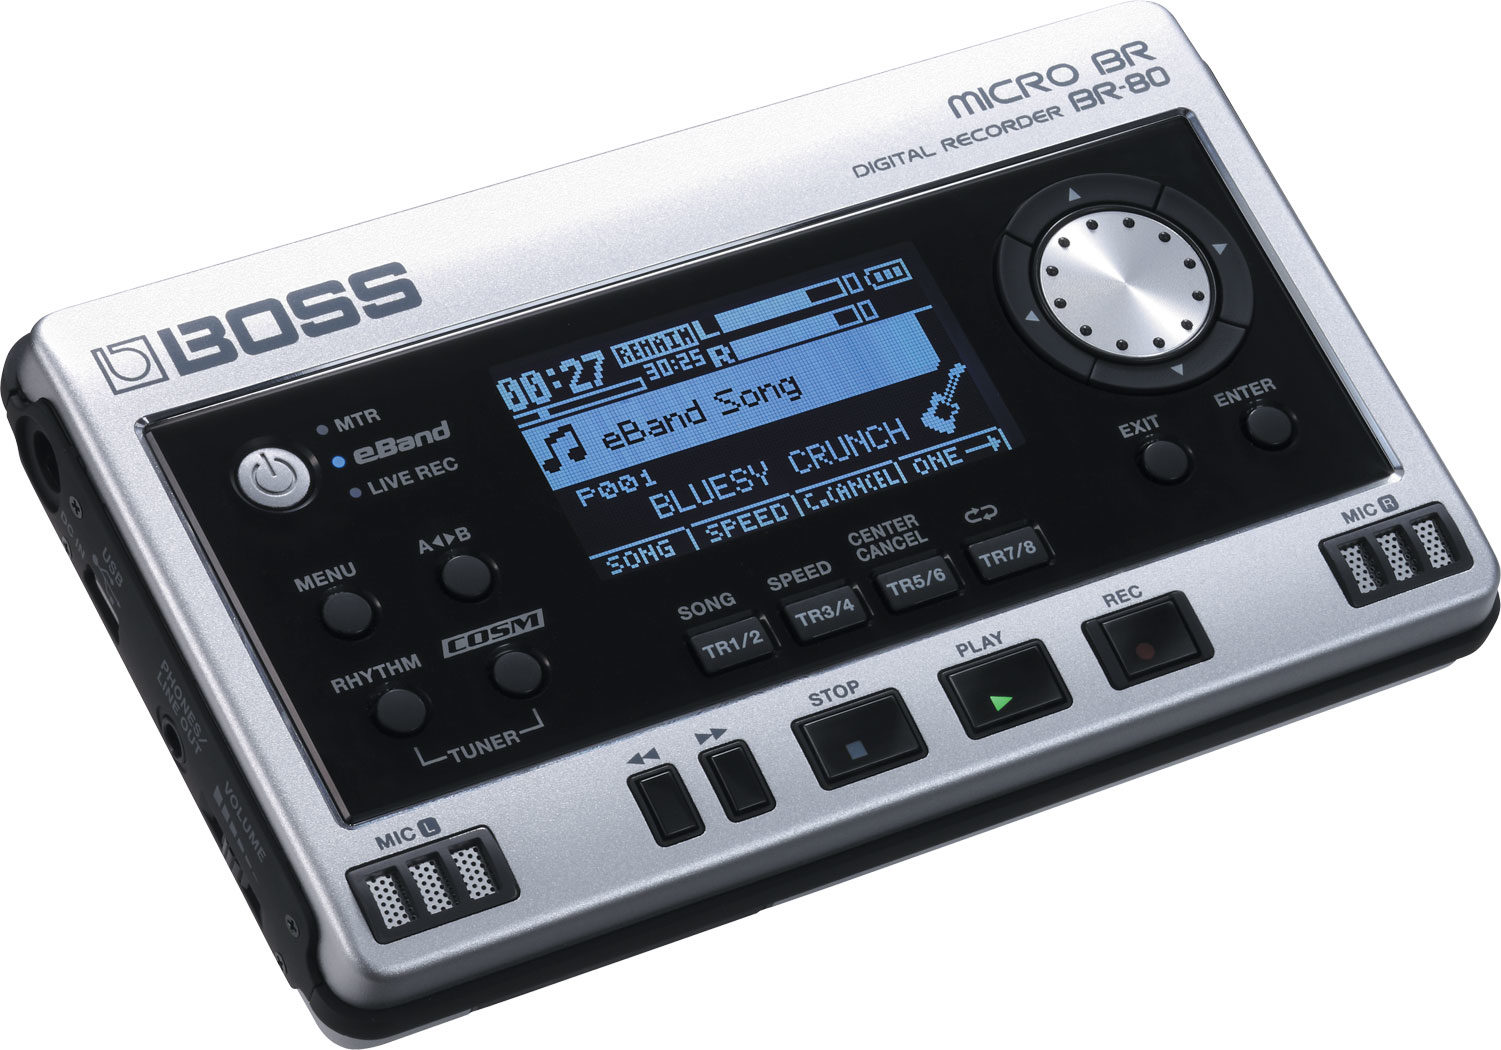 Boss Micro BR BR-80 Digital Recorder | zZounds